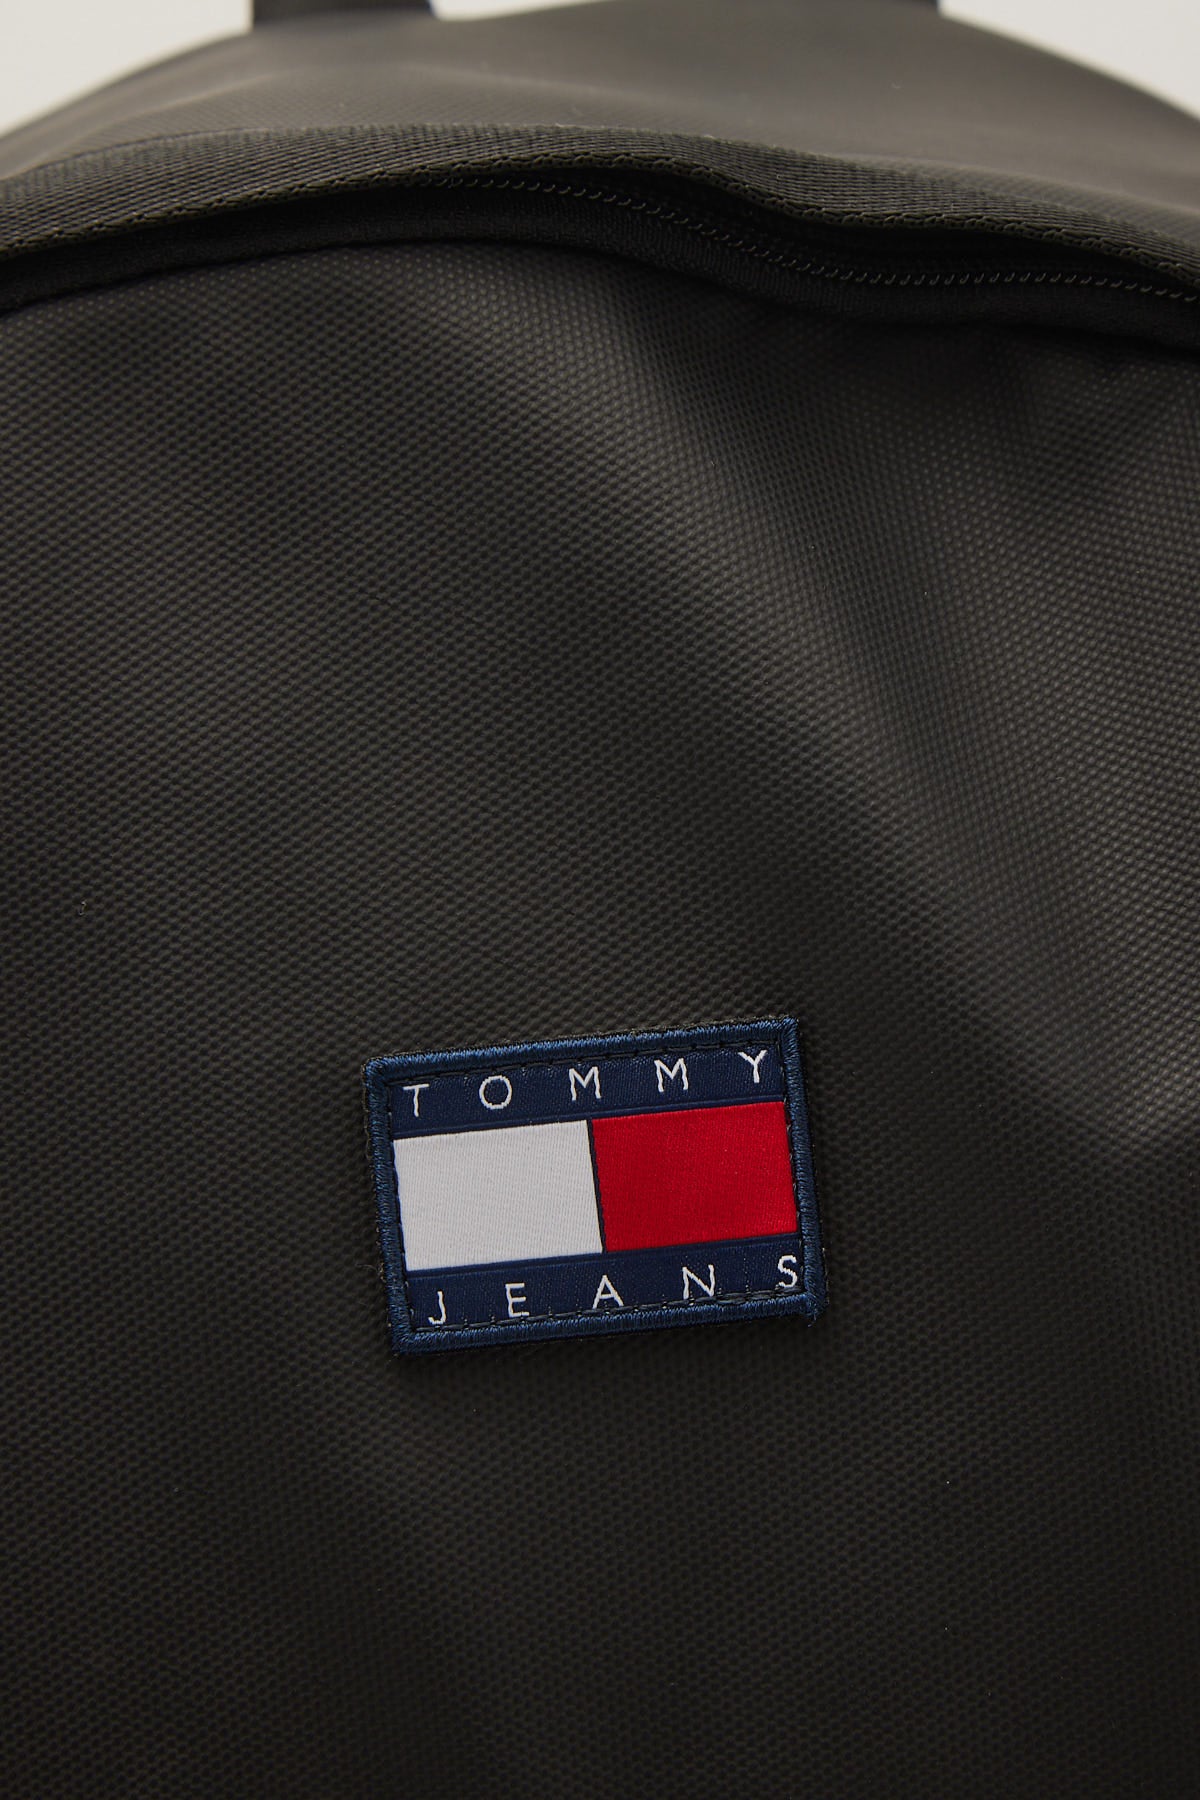 Tommy Jeans TJM DLY Elevated Backpack Black